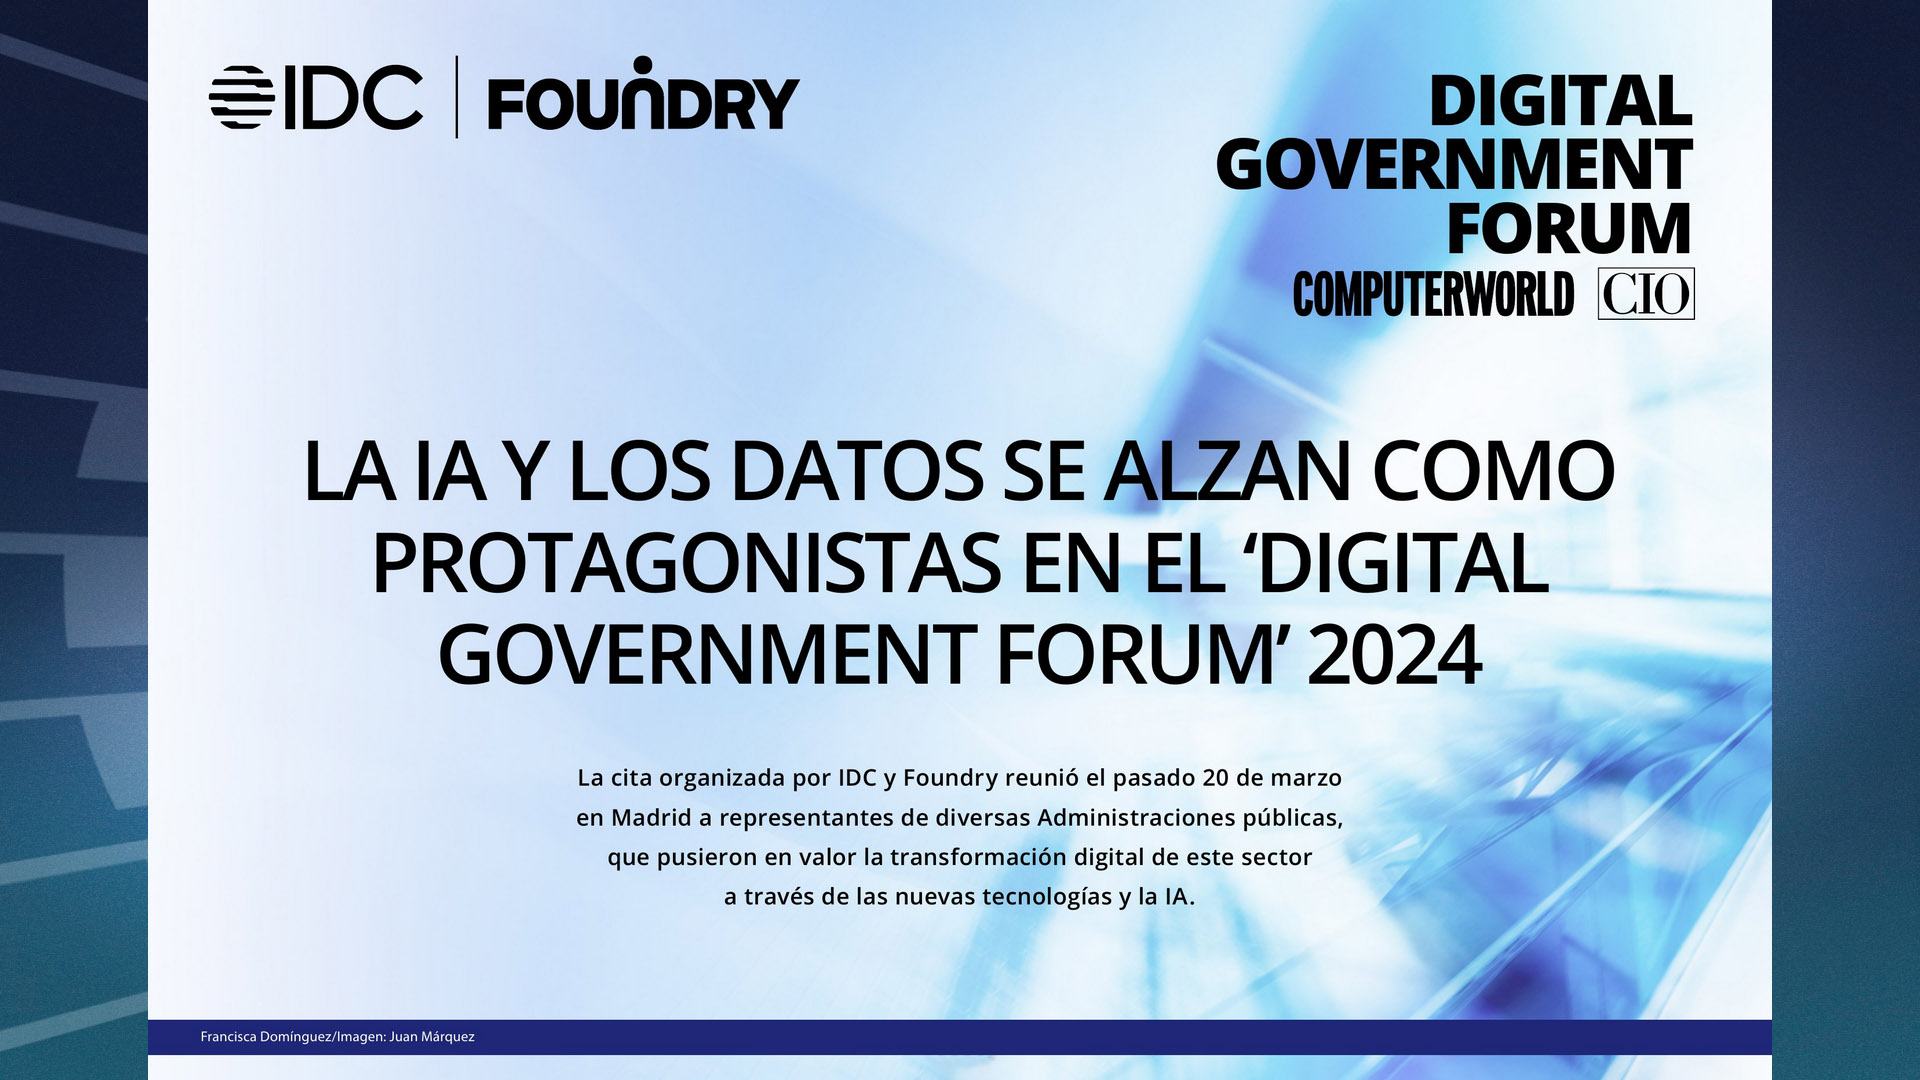 ComputerWorld Insider Evento Digital Government Forum 2024